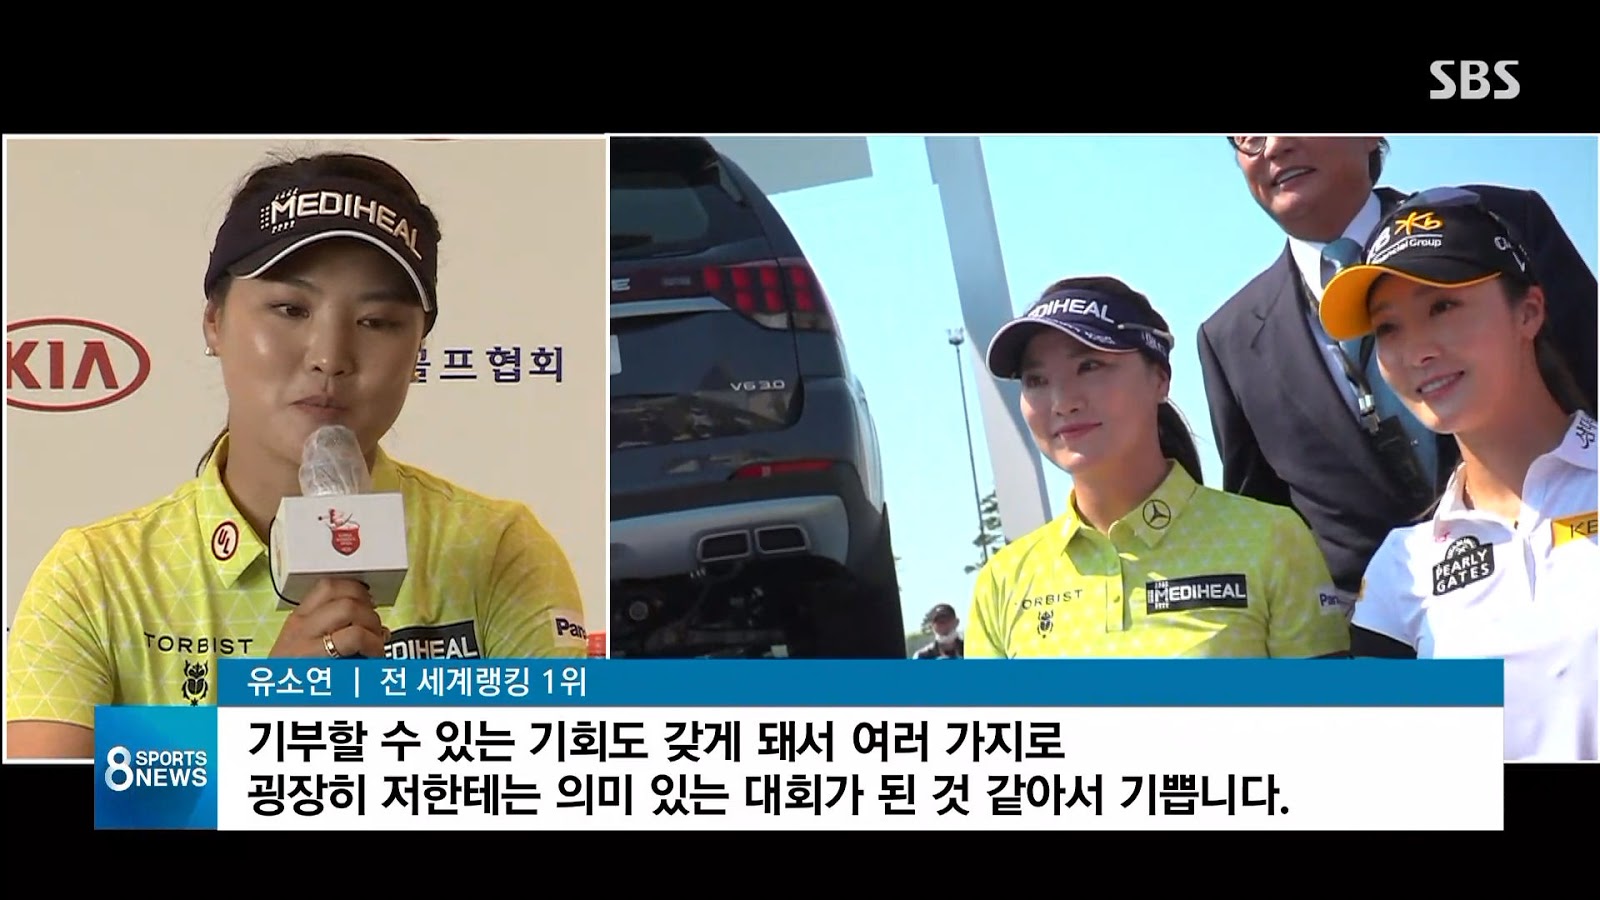 유소연 한국여자오픈 우승, 상금 전액 기부